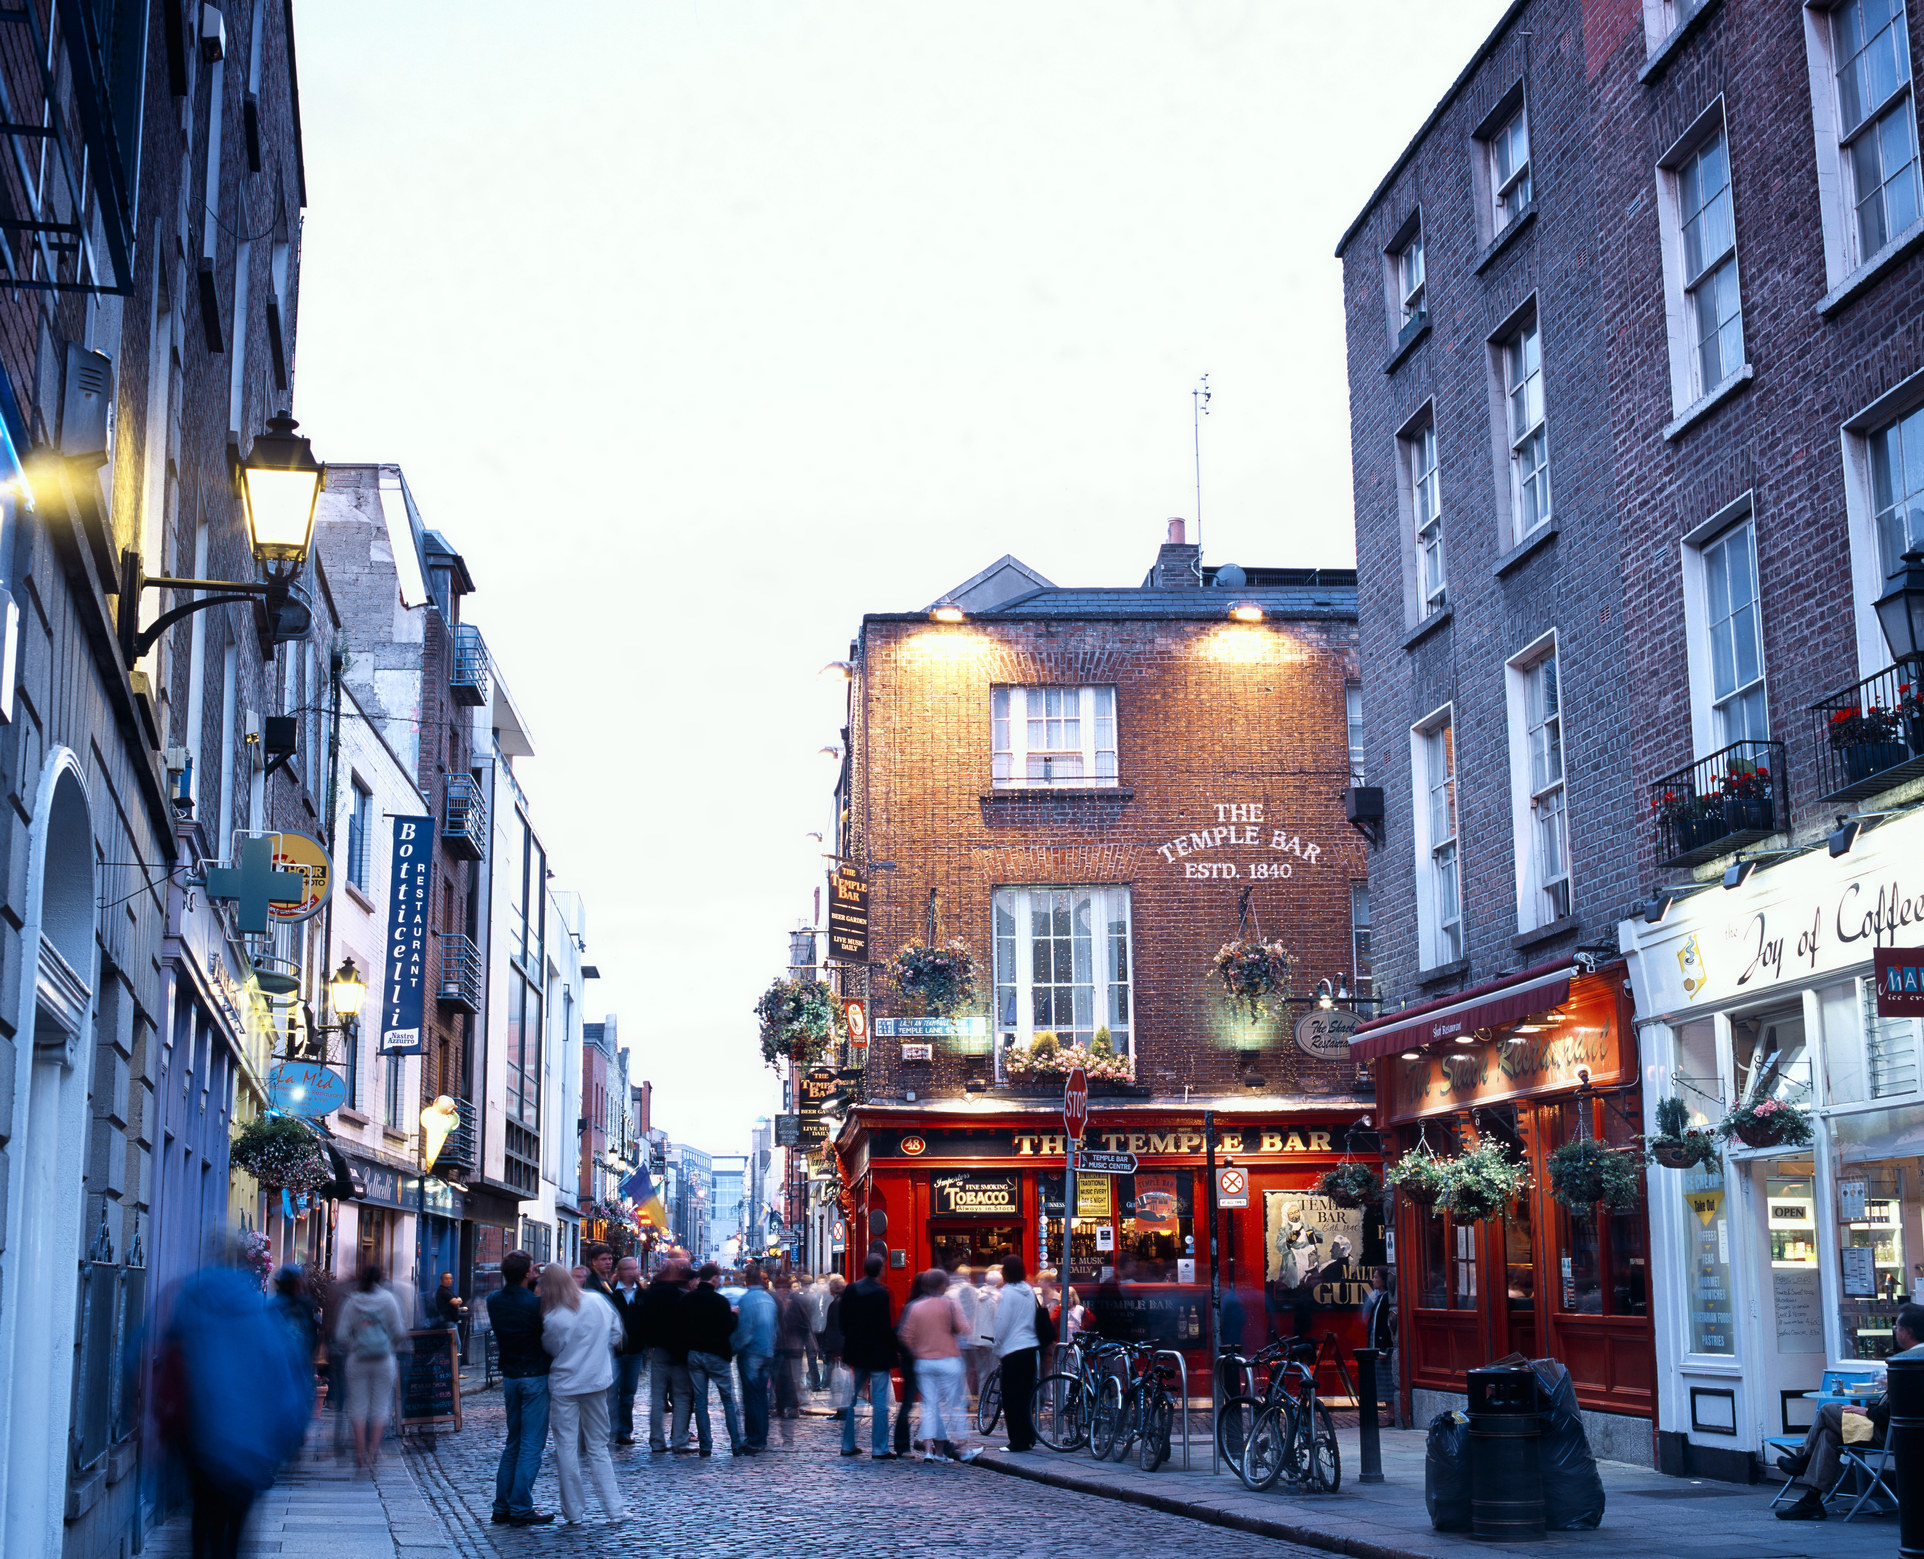 Street scene in Temple Bar, Dublin